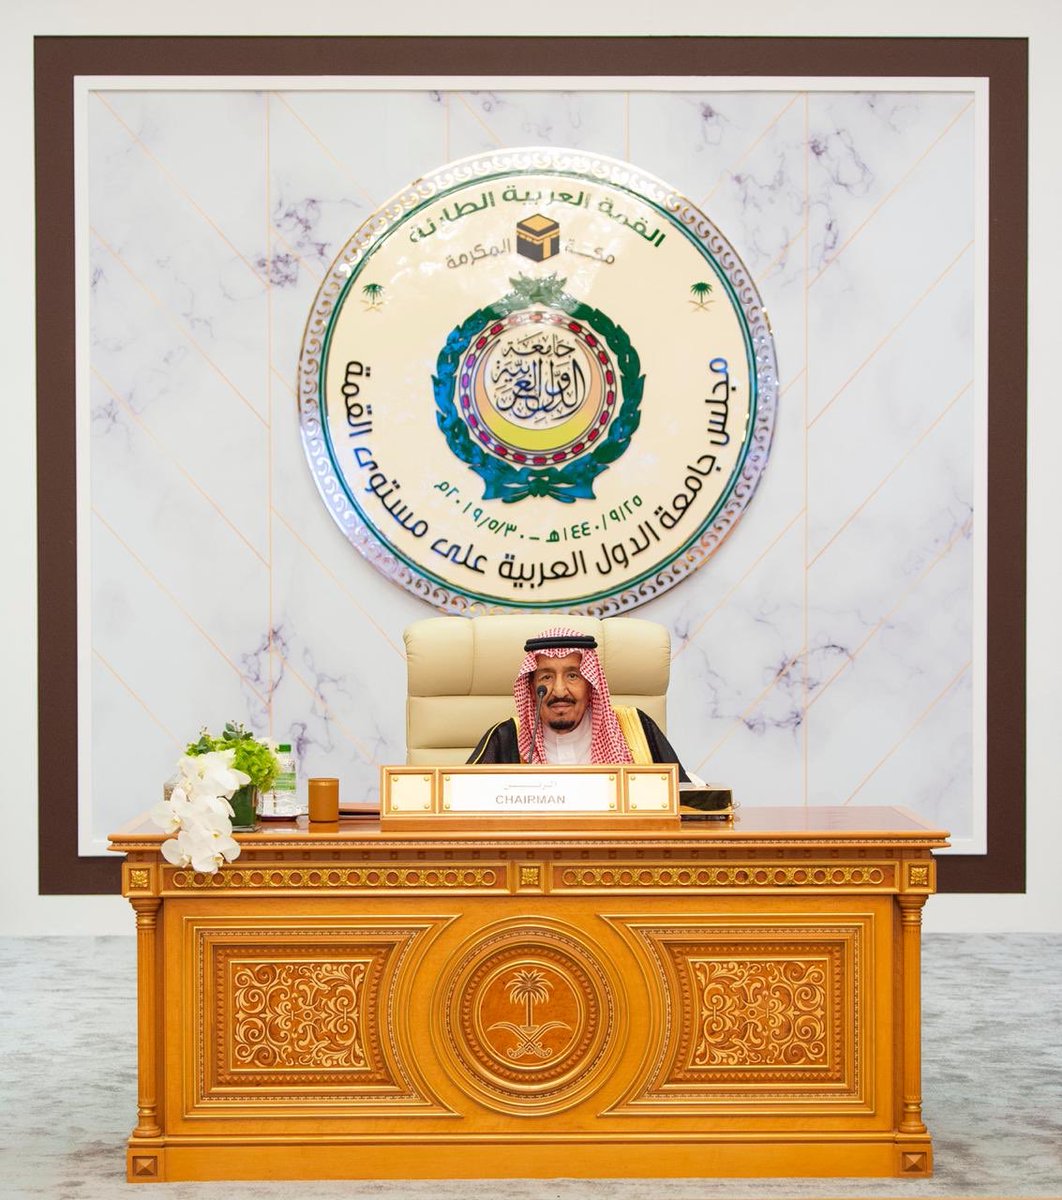 شاهد بالصور.. لقطات من القمة العربية الطارئة برئاسة الملك سلمان بمكة